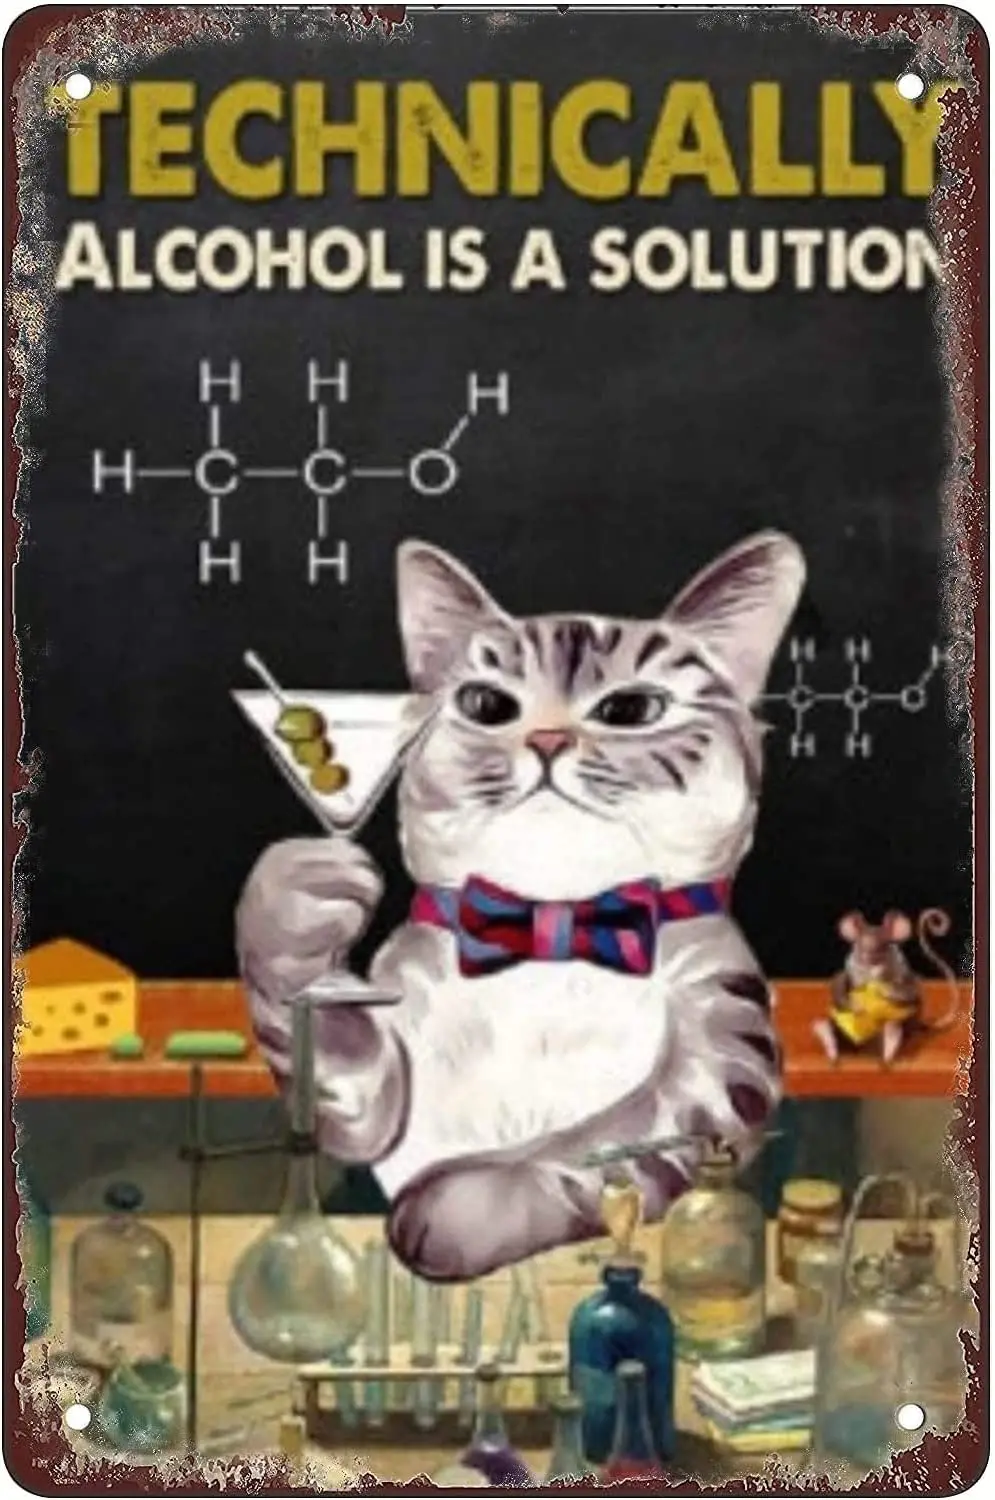 

Технически Алкоголь-это решение, кошка, забавные жестяные фотообои, Декор для дома, искусство, постер, винтажное украшение для стен в кафе